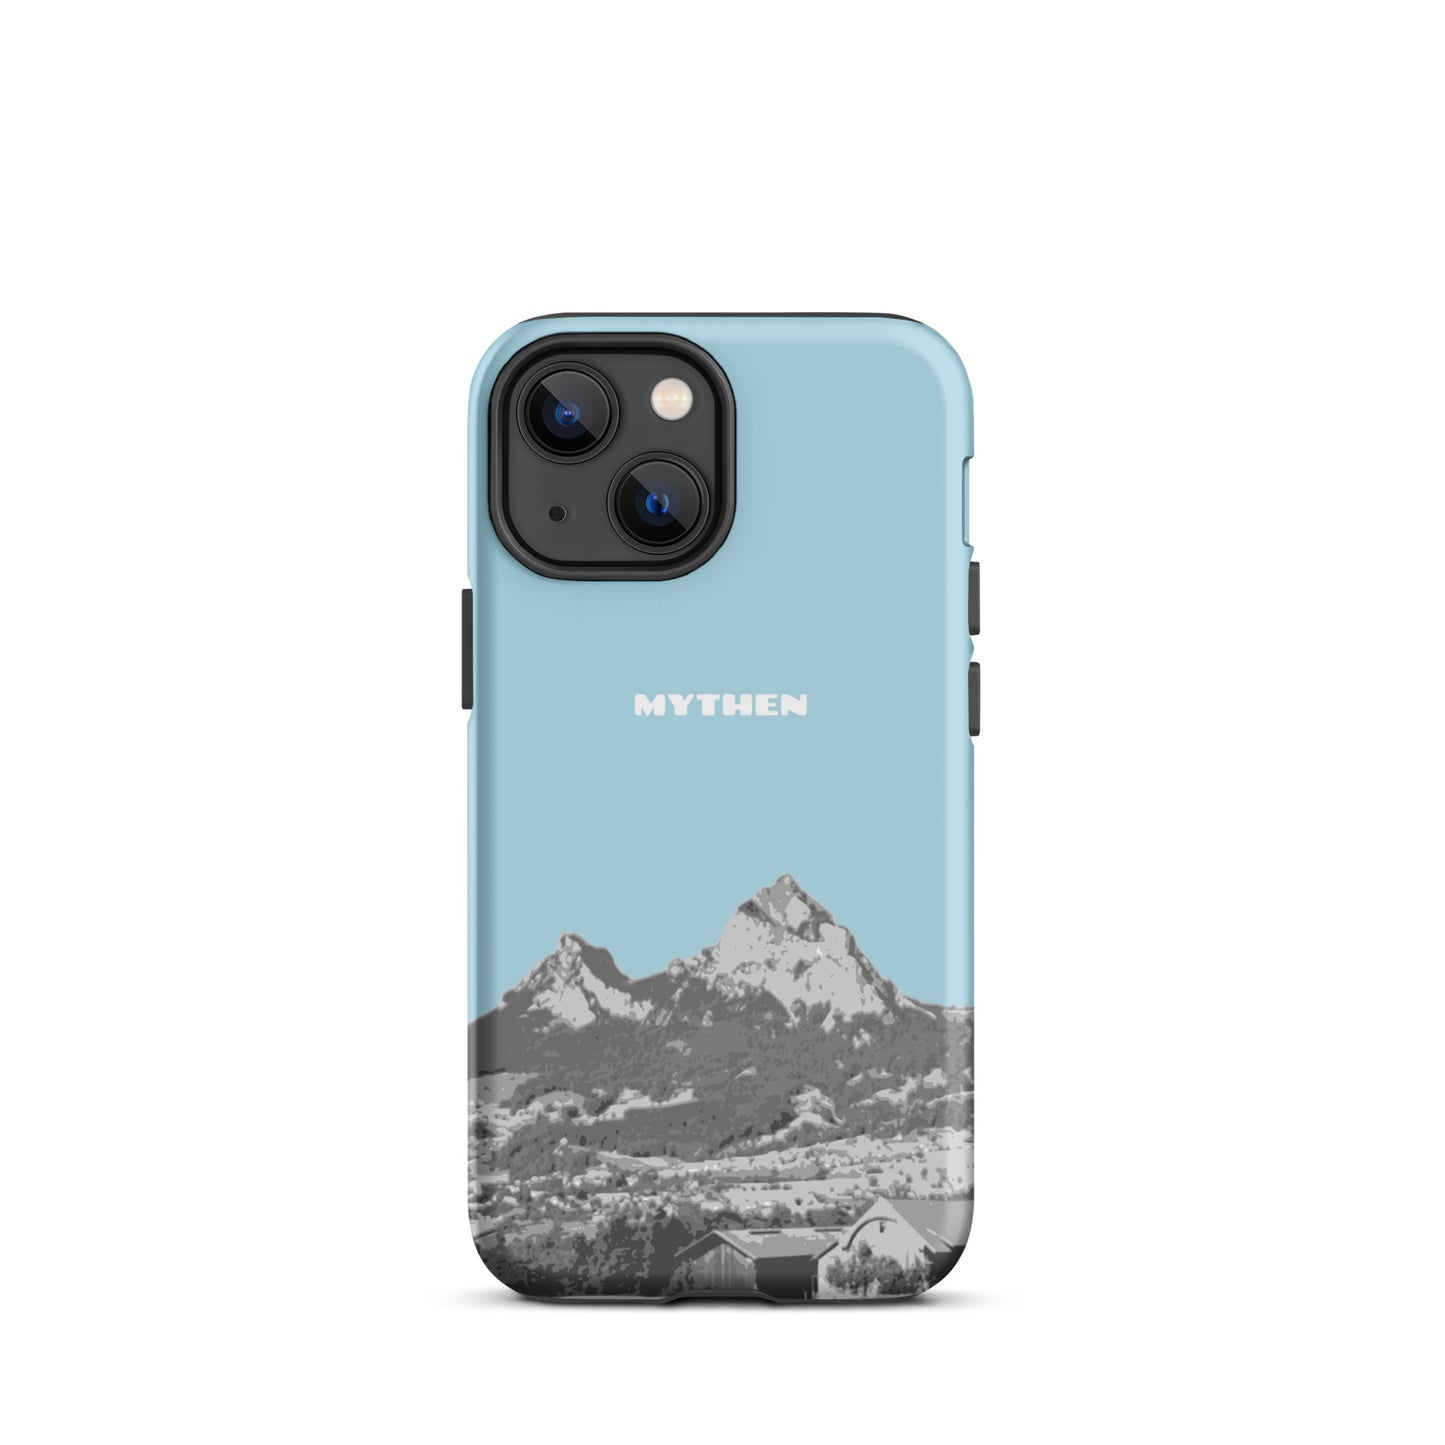 Hülle für das iPhone 13 mini von Apple in der Farbe Hellblau, die den Grossen Mythen und den Kleinen Mythen bei Schwyz zeigt. 